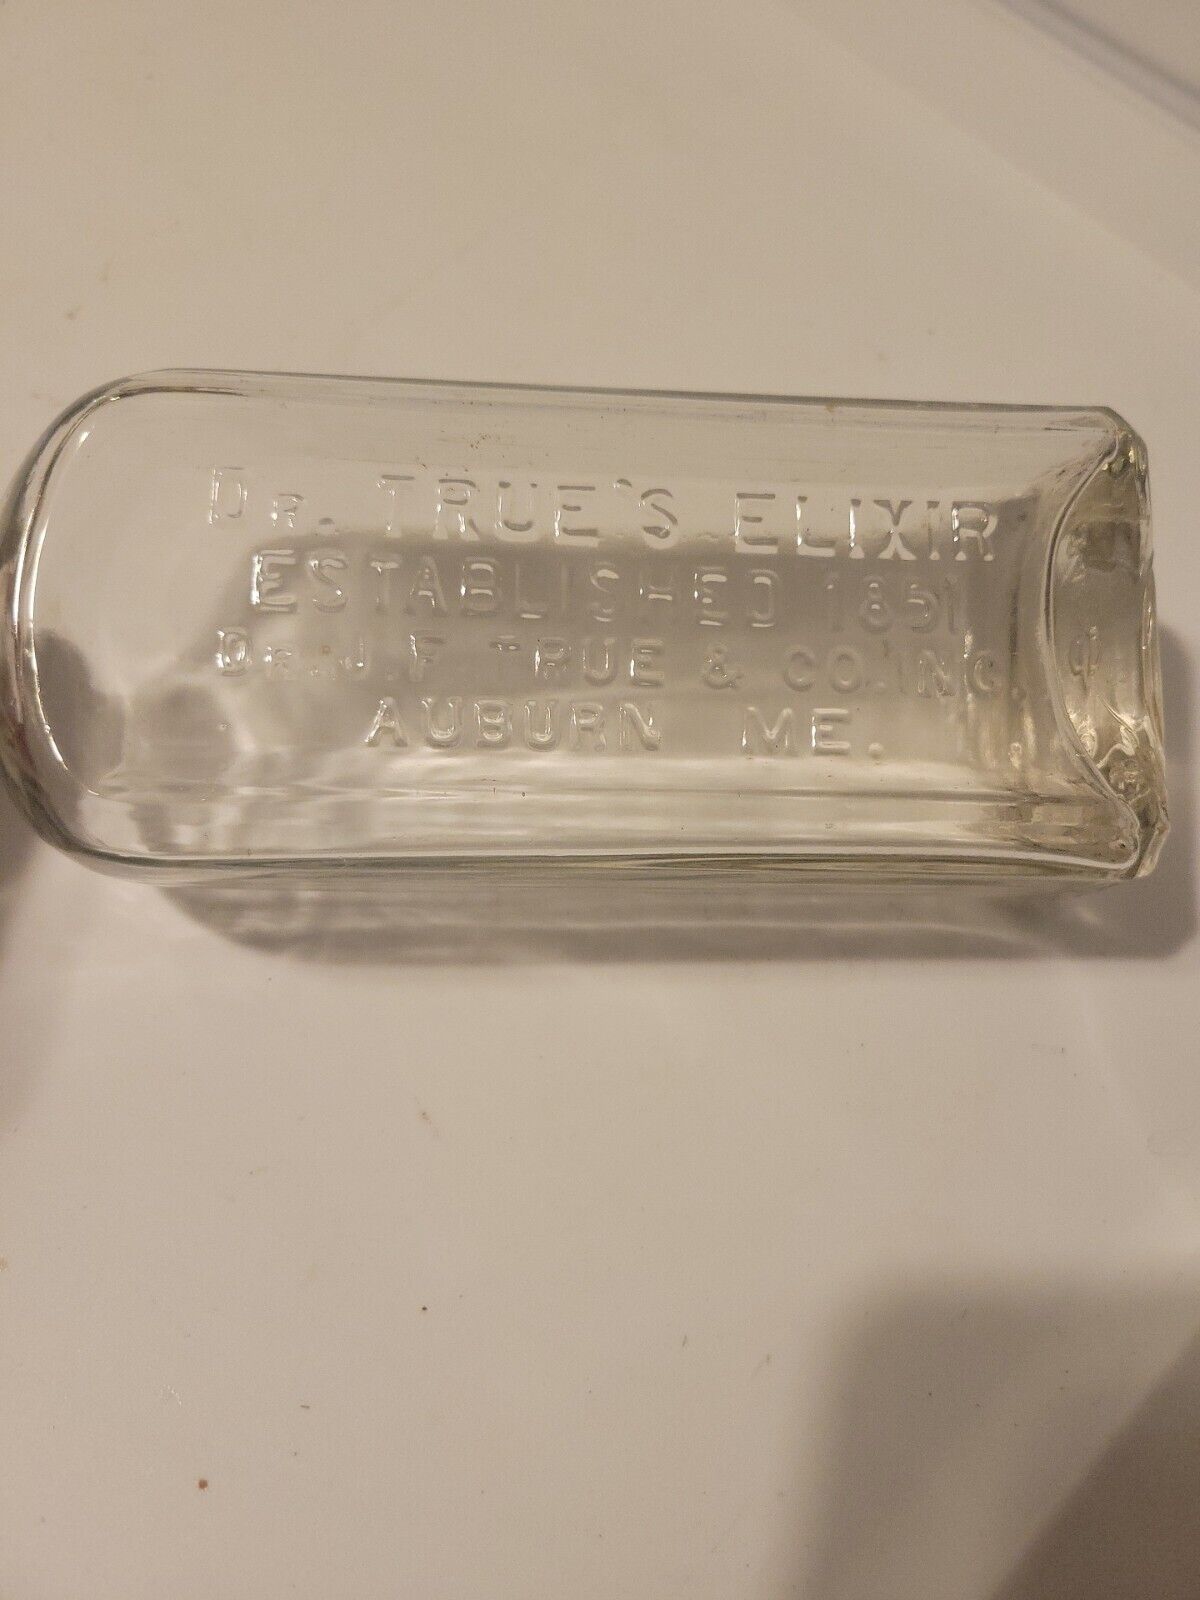 Antique Dr. True’s Elixir Bottle - J. F. True & Co. Auburn, Maine Medicine Magic